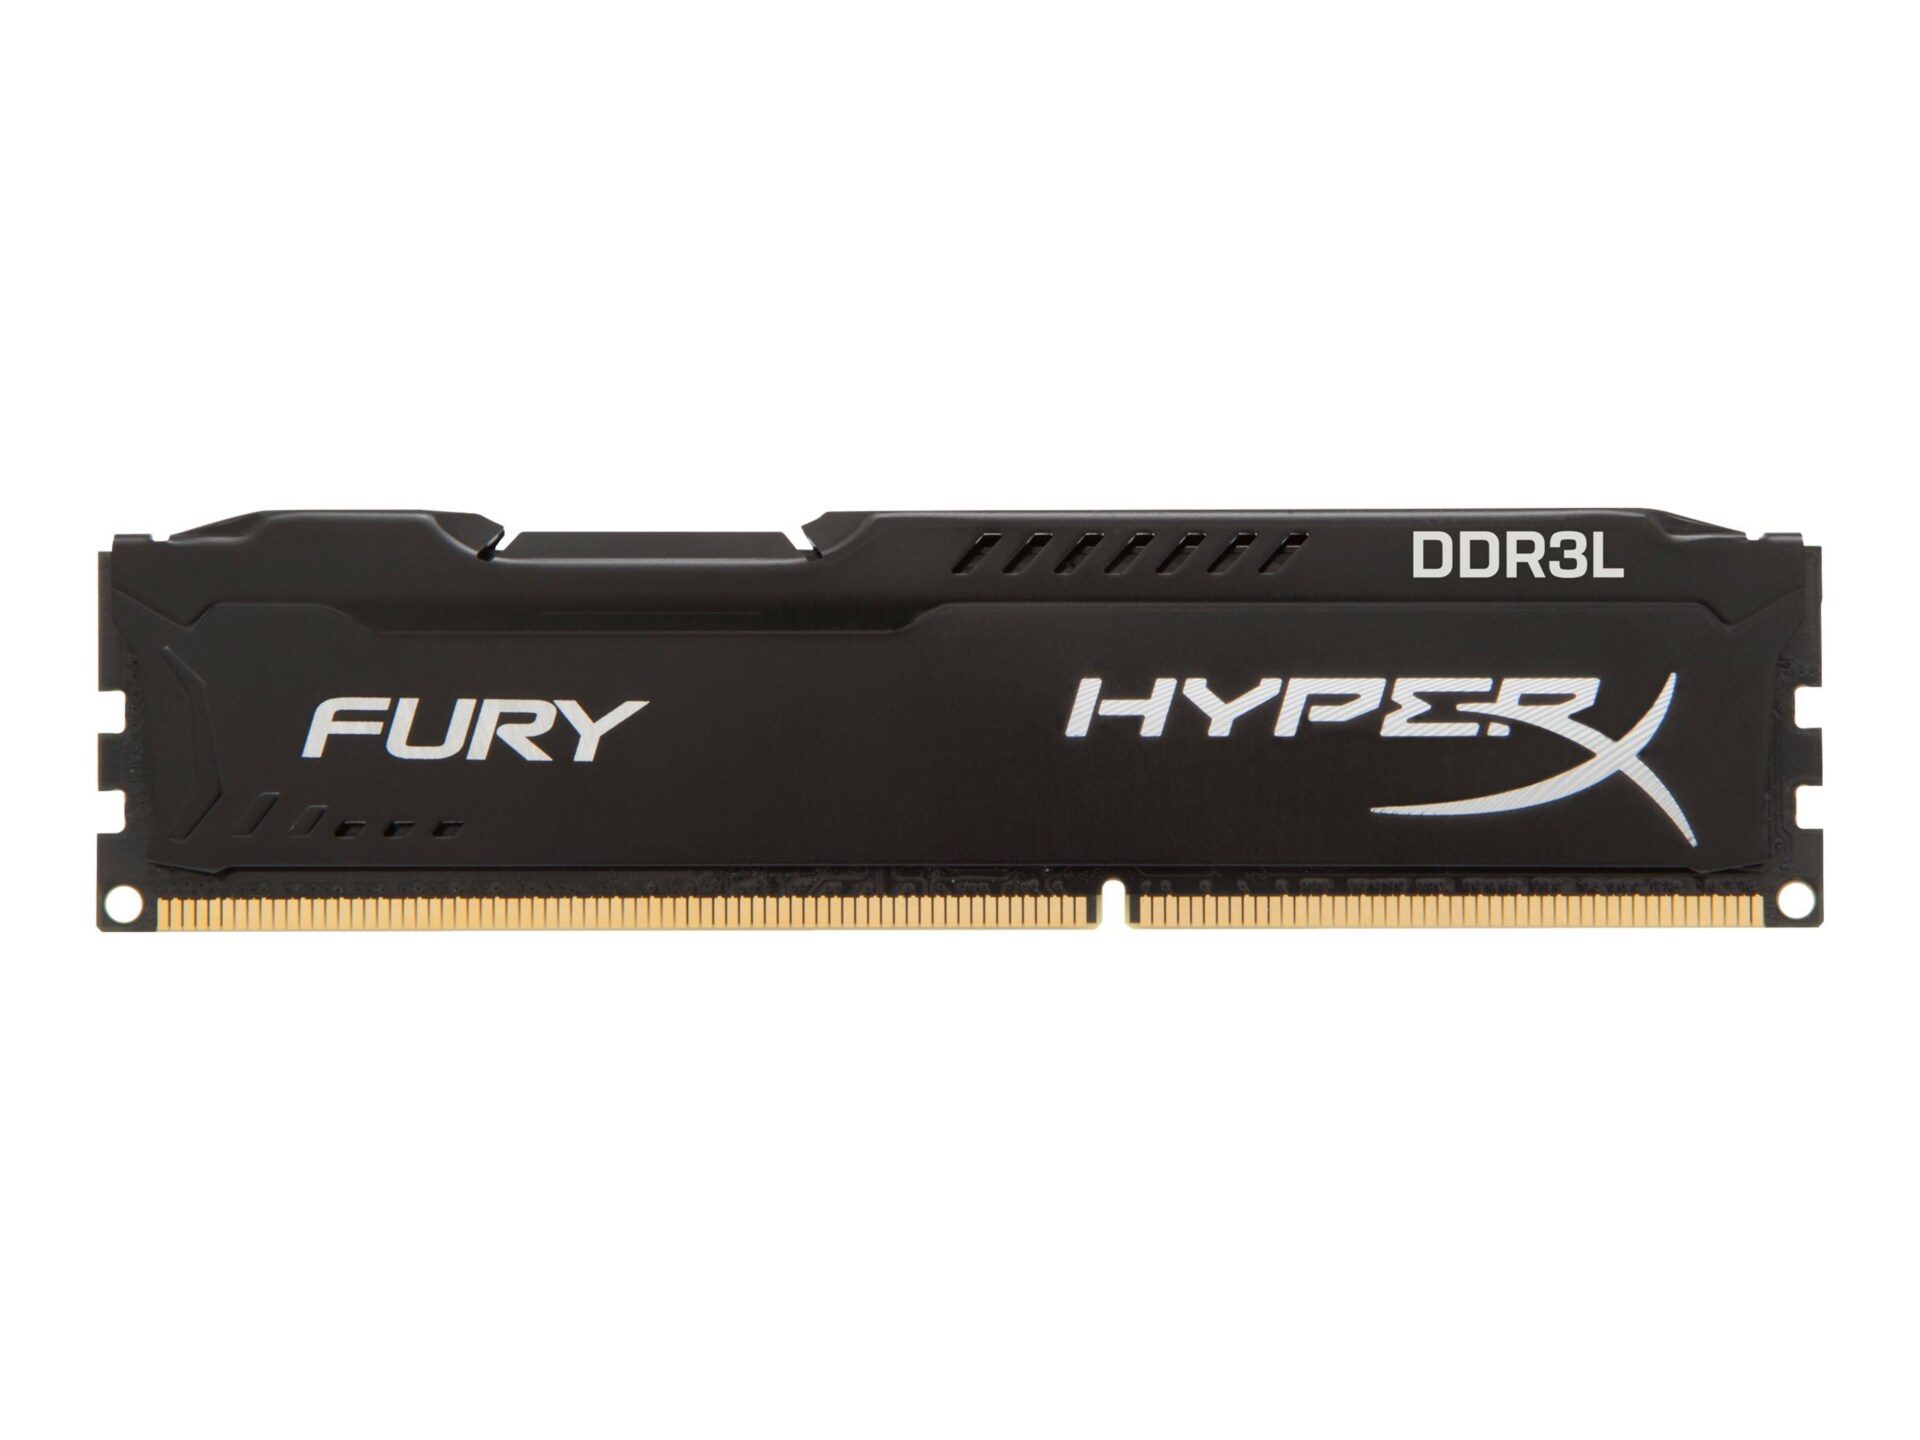 HyperX FURY - DDR3L - 8 GB: 2 x 4 GB - DIMM 240-pin - unbuffered